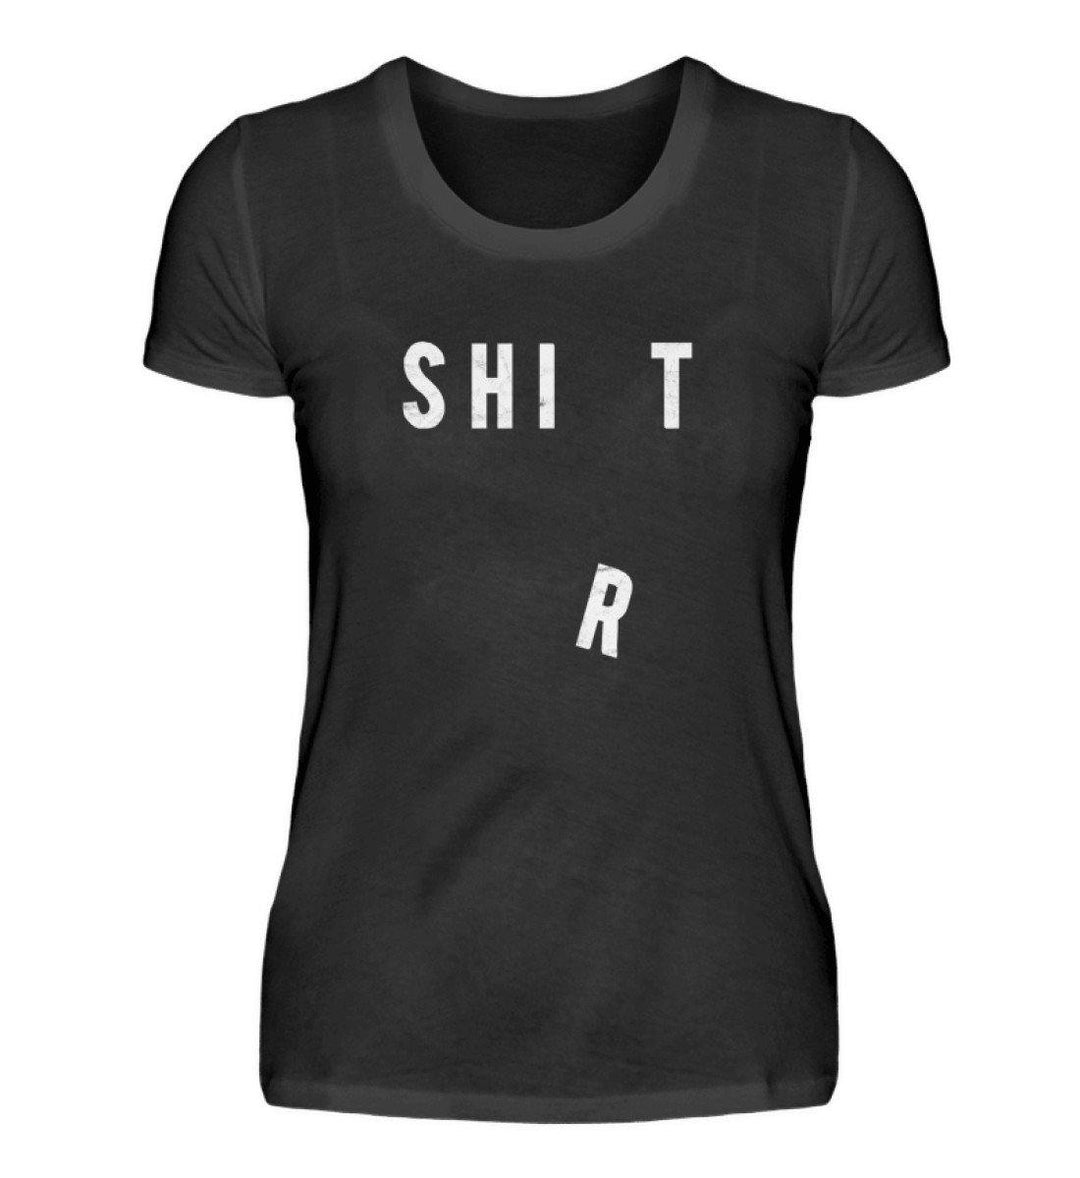 Shit Shirt - Words on Shirts - PR  - Damen Premiumshirt - Words on Shirts Sag es mit dem Mittelfinger Shirts Hoodies Sweatshirt Taschen Gymsack Spruch Sprüche Statement